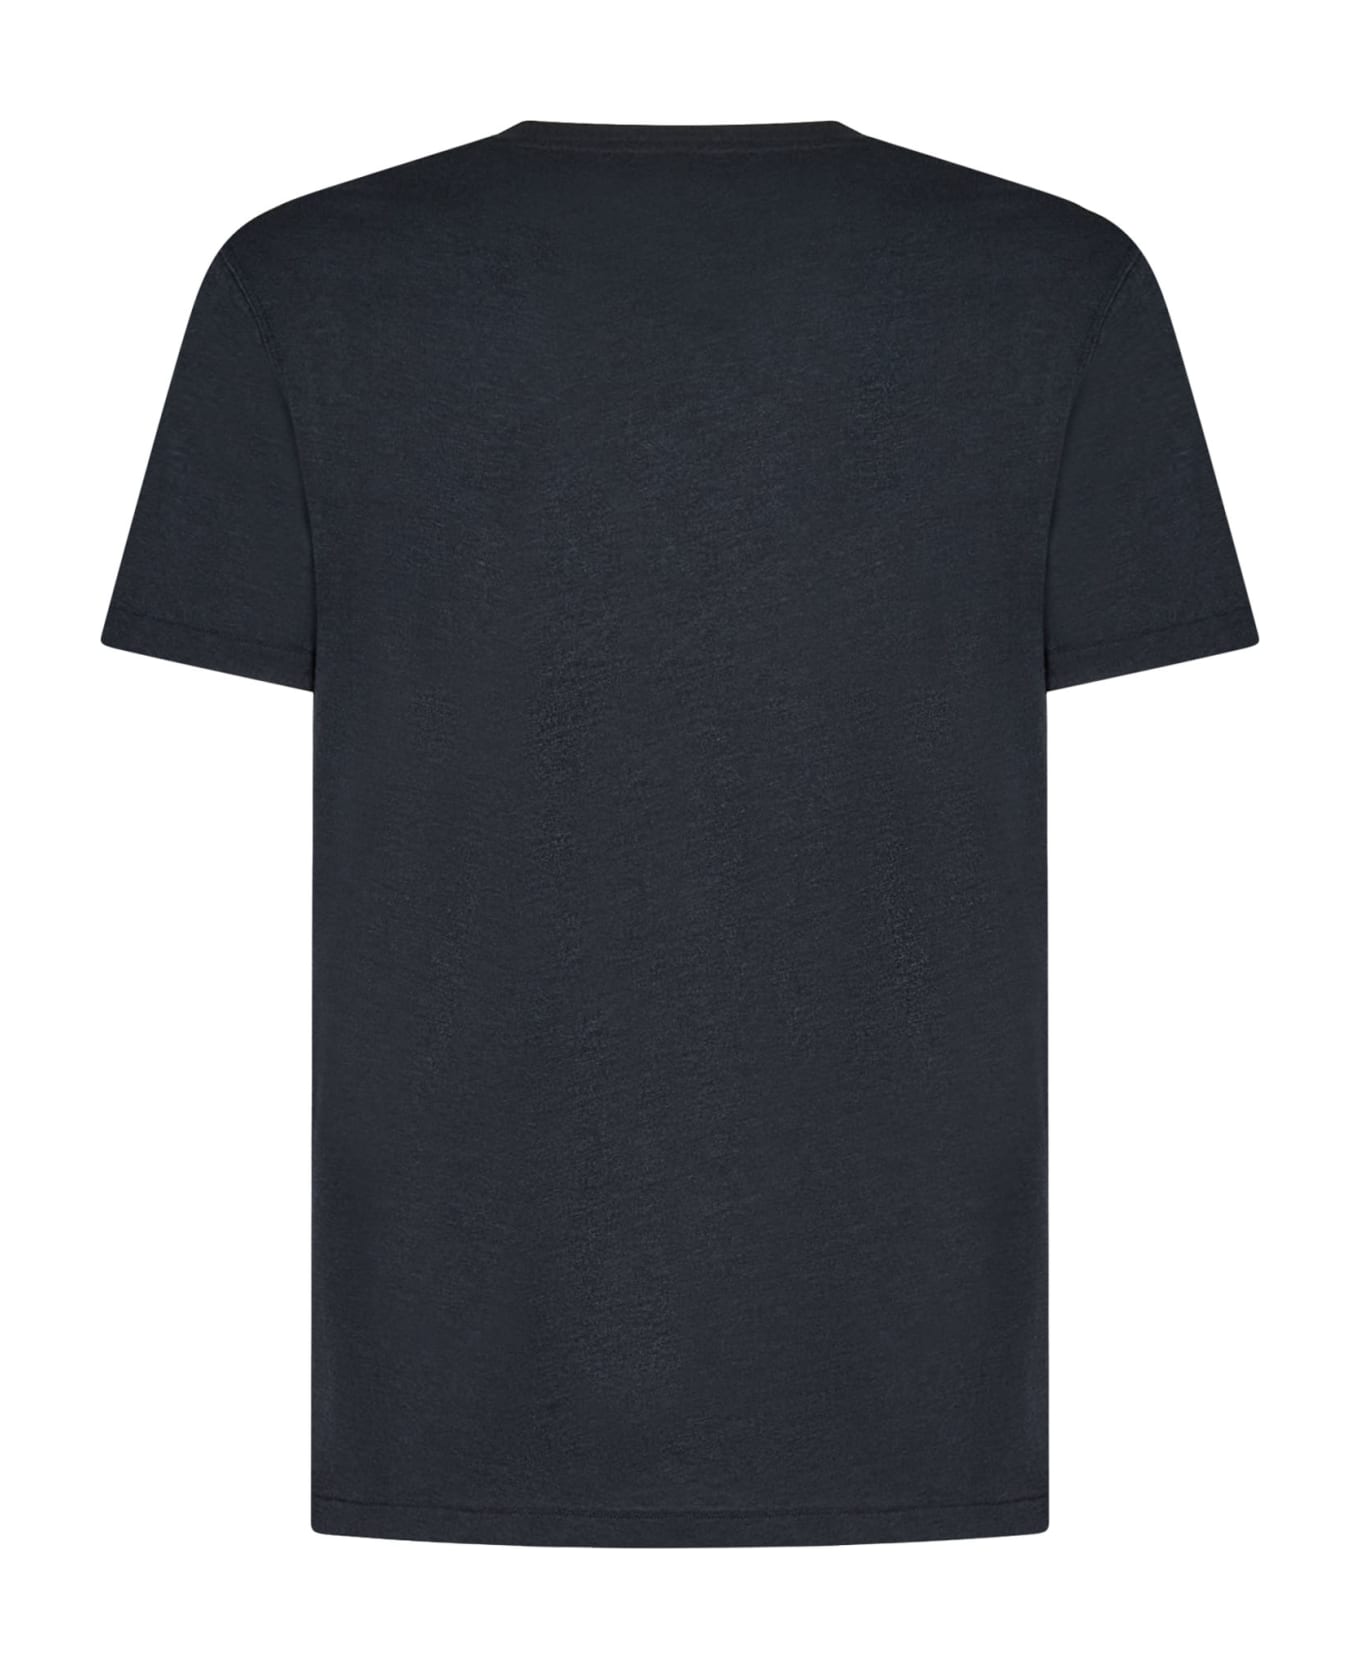 Tom Ford T-shirt - Black シャツ